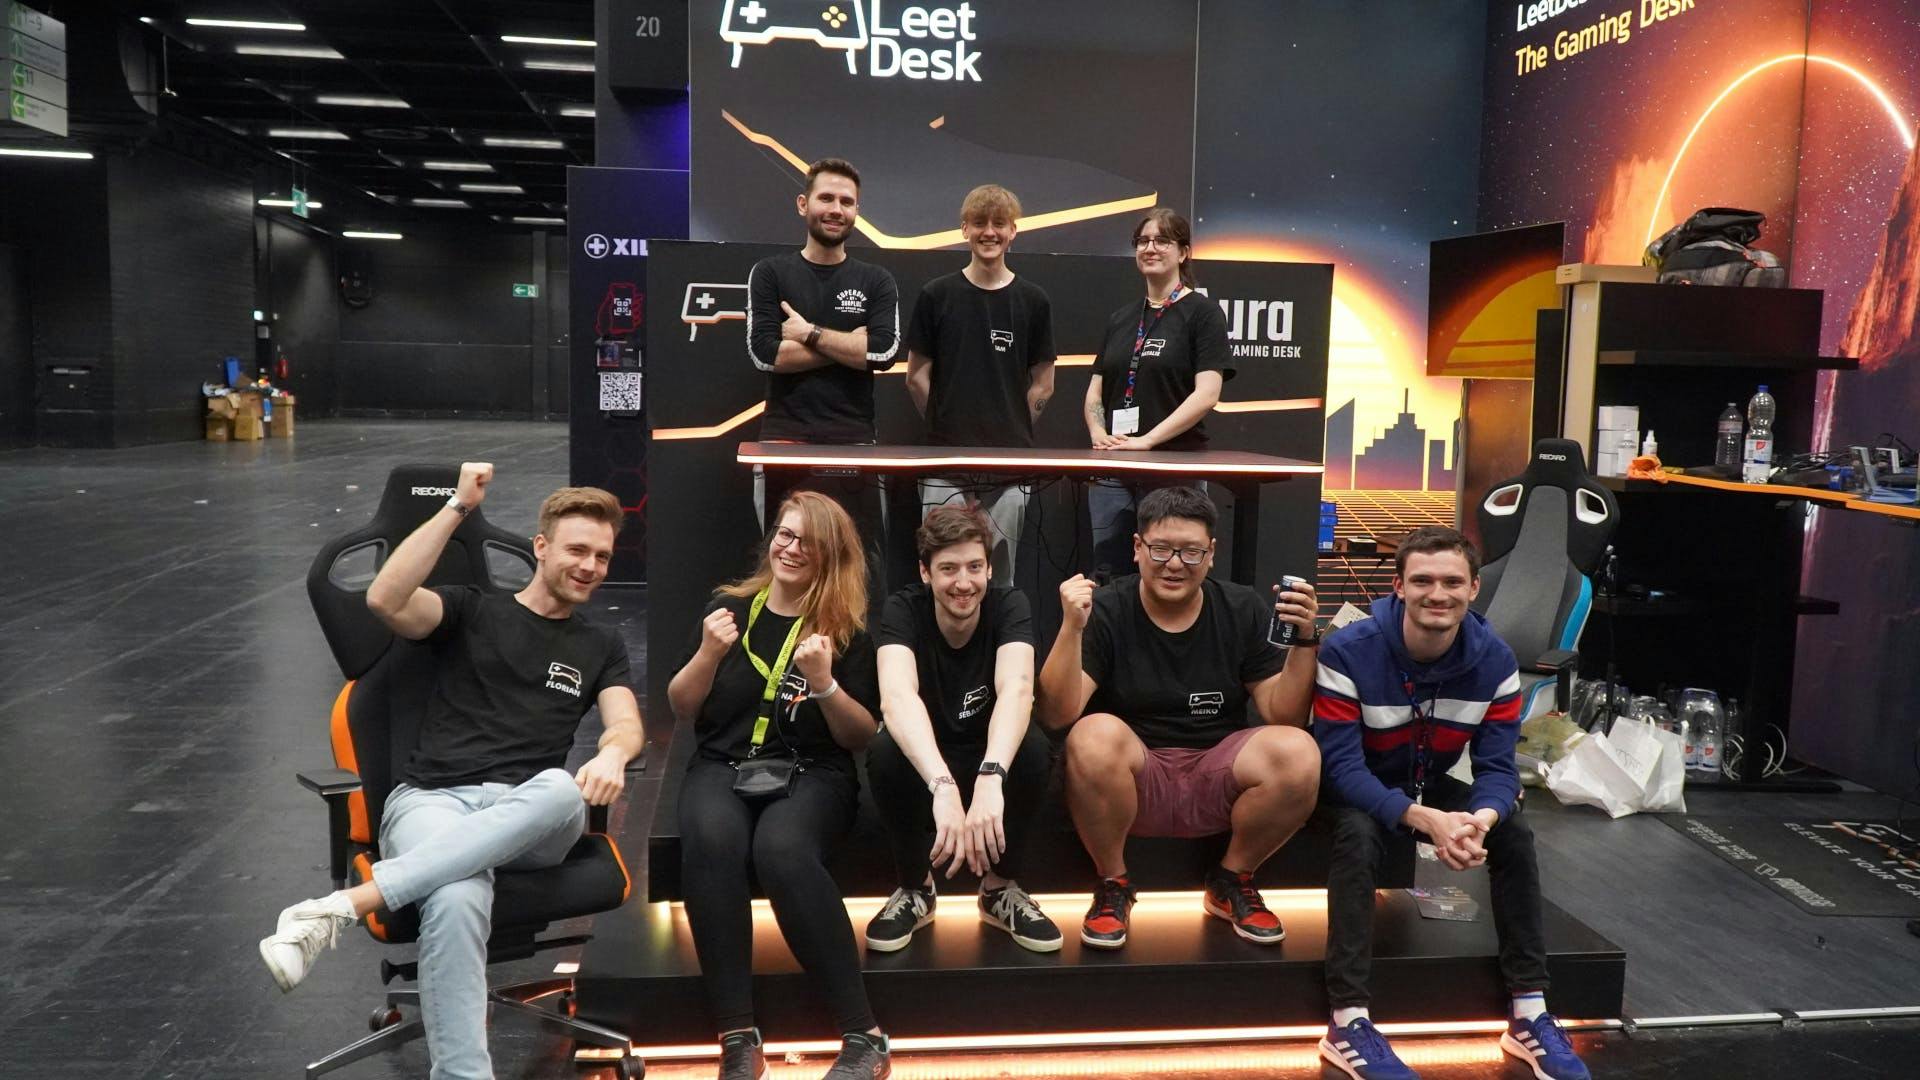 L'équipe LeetDesk se trouve sur la scène de la Gamescom, devant et derrière la table de jeu AURA LED, riant face à la caméra.